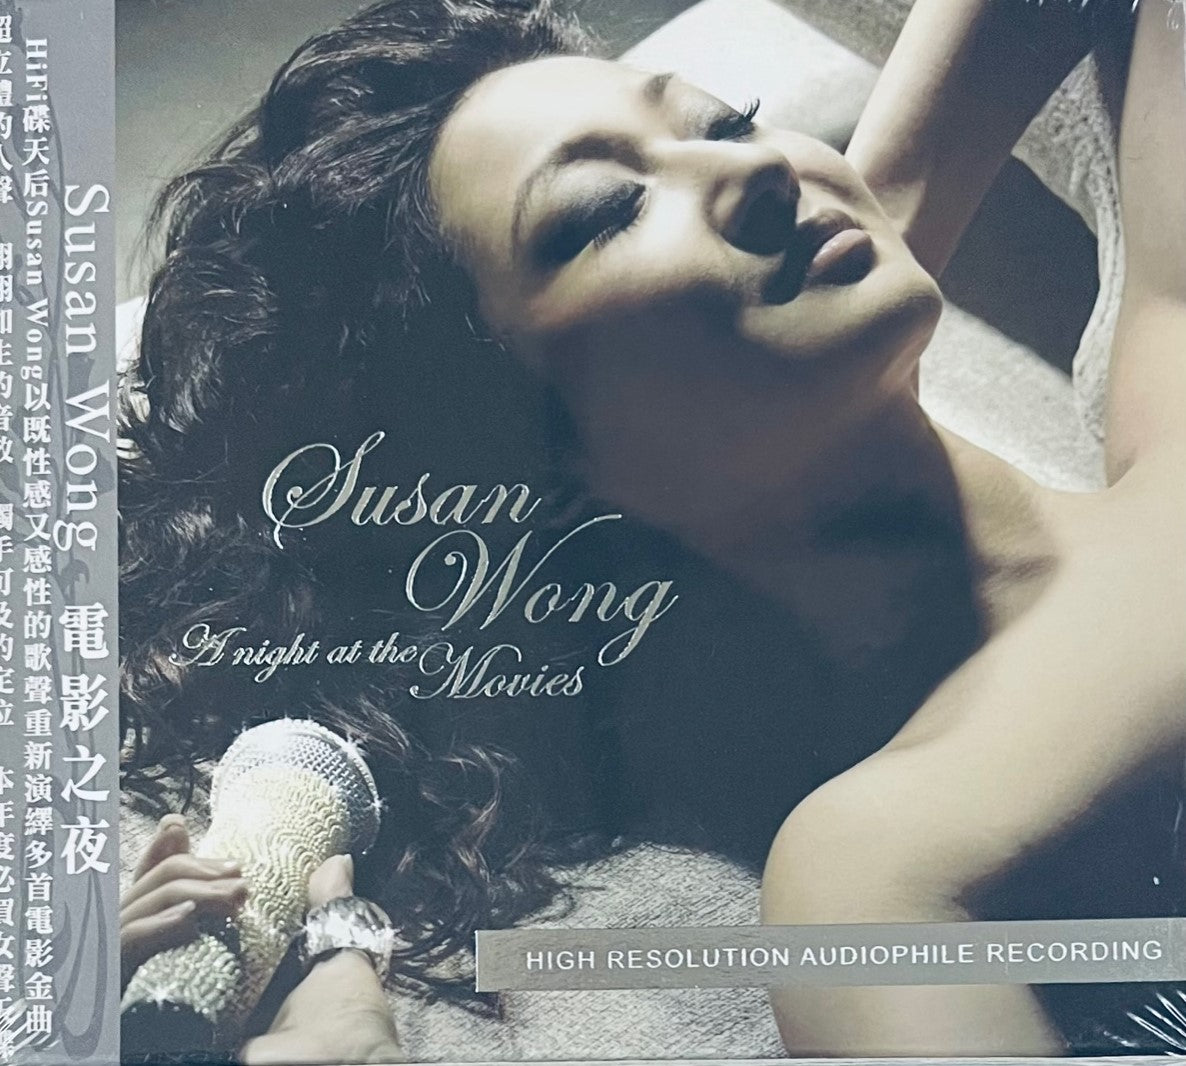 SUSAN WONG - A NIGHT AT THE MOVIES (CD)